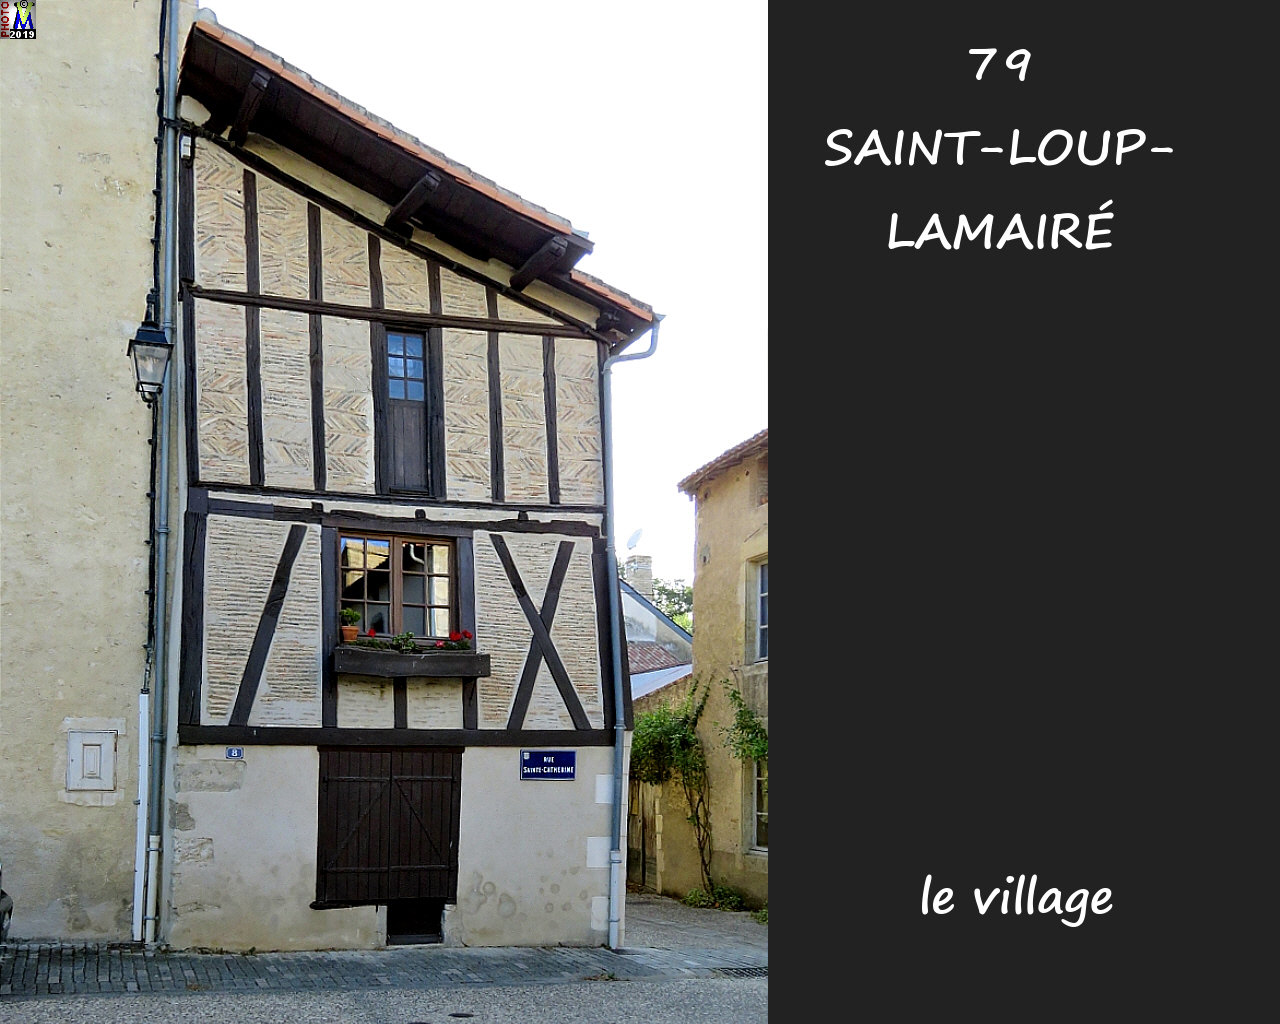 79StLOUP-LAMAIRE_village_1030.jpg